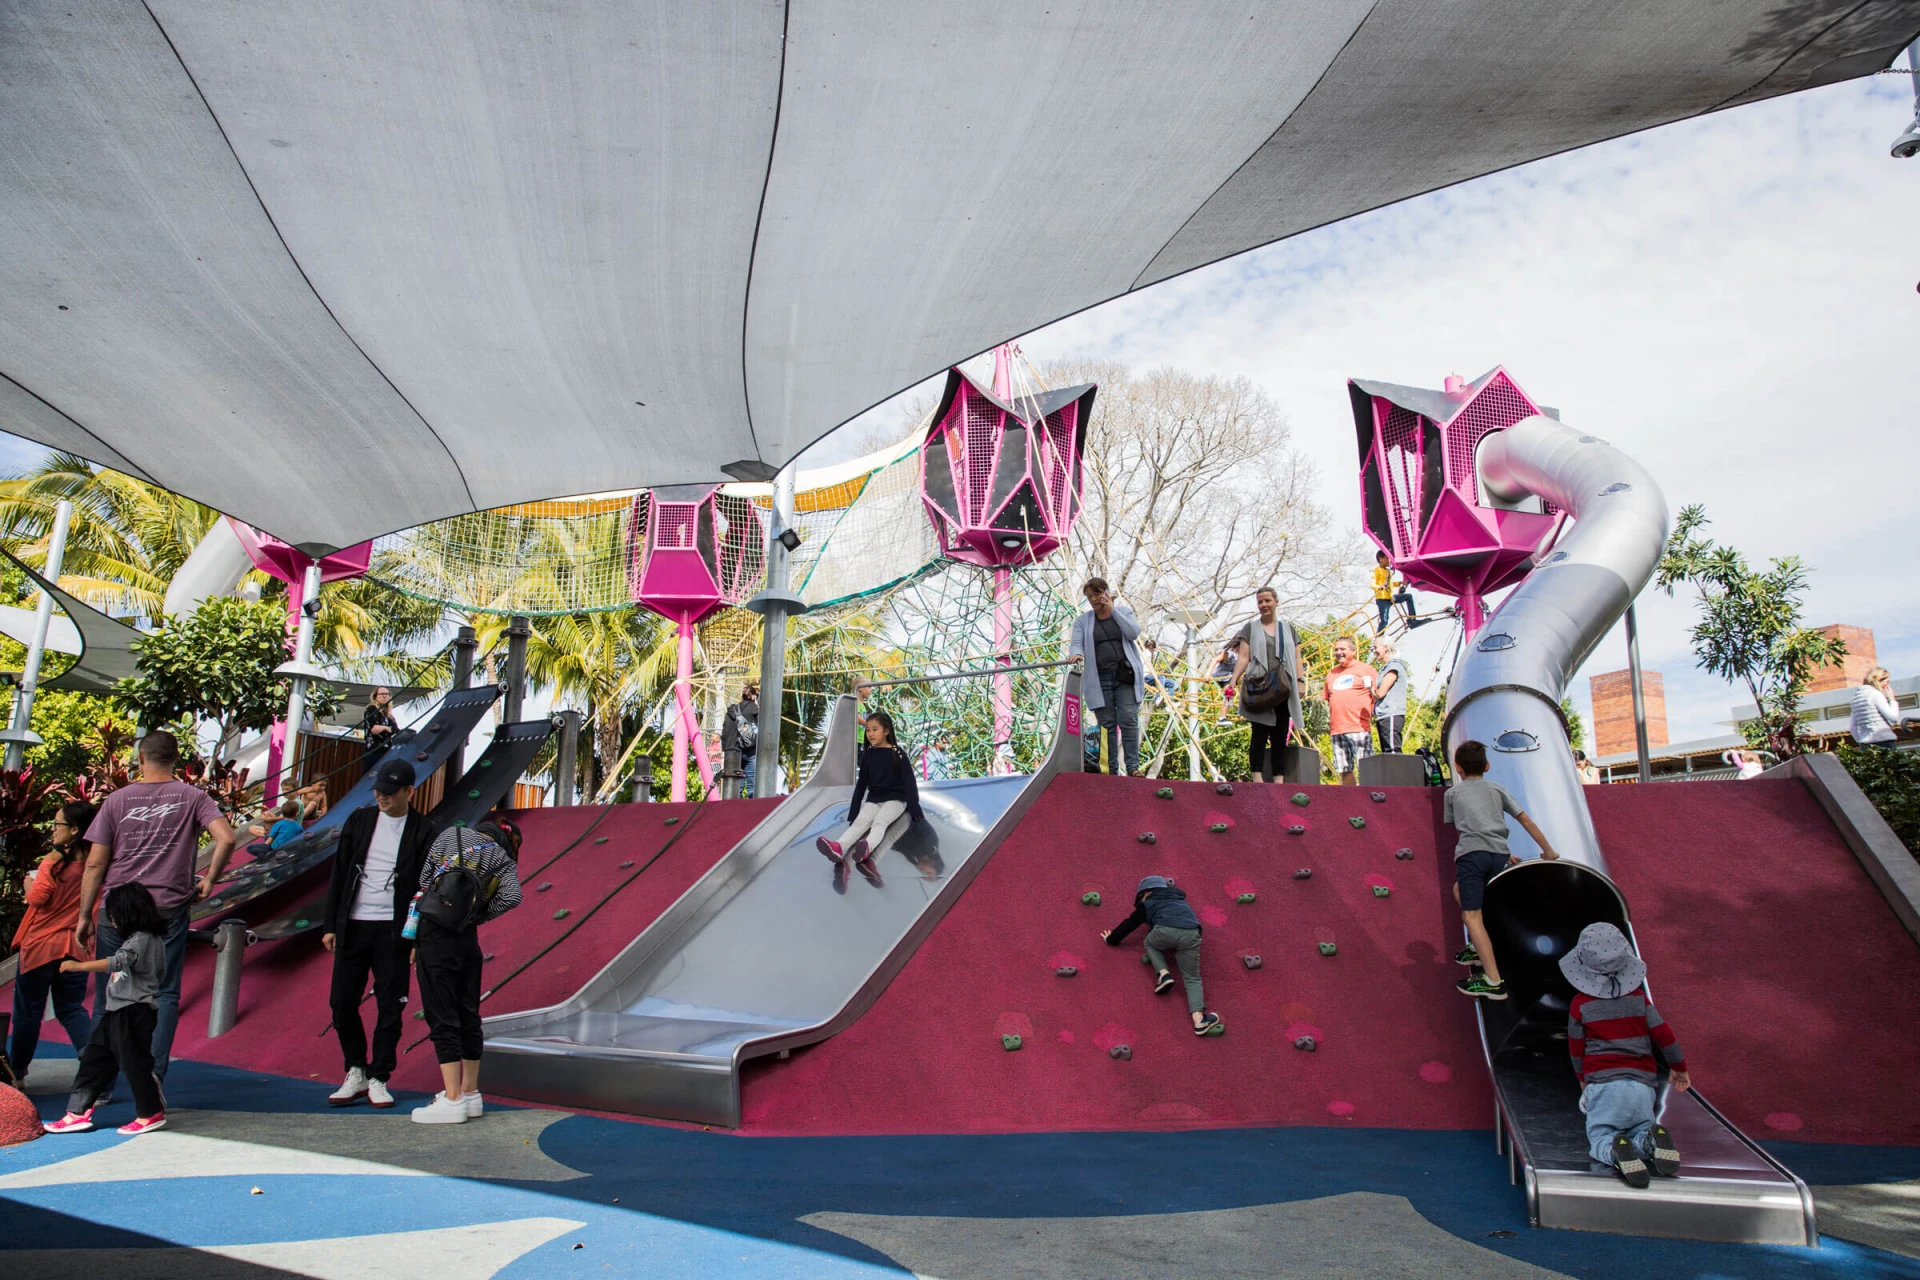 parco giochi in Australia con ombreggiatura installata per proteggere dal calore